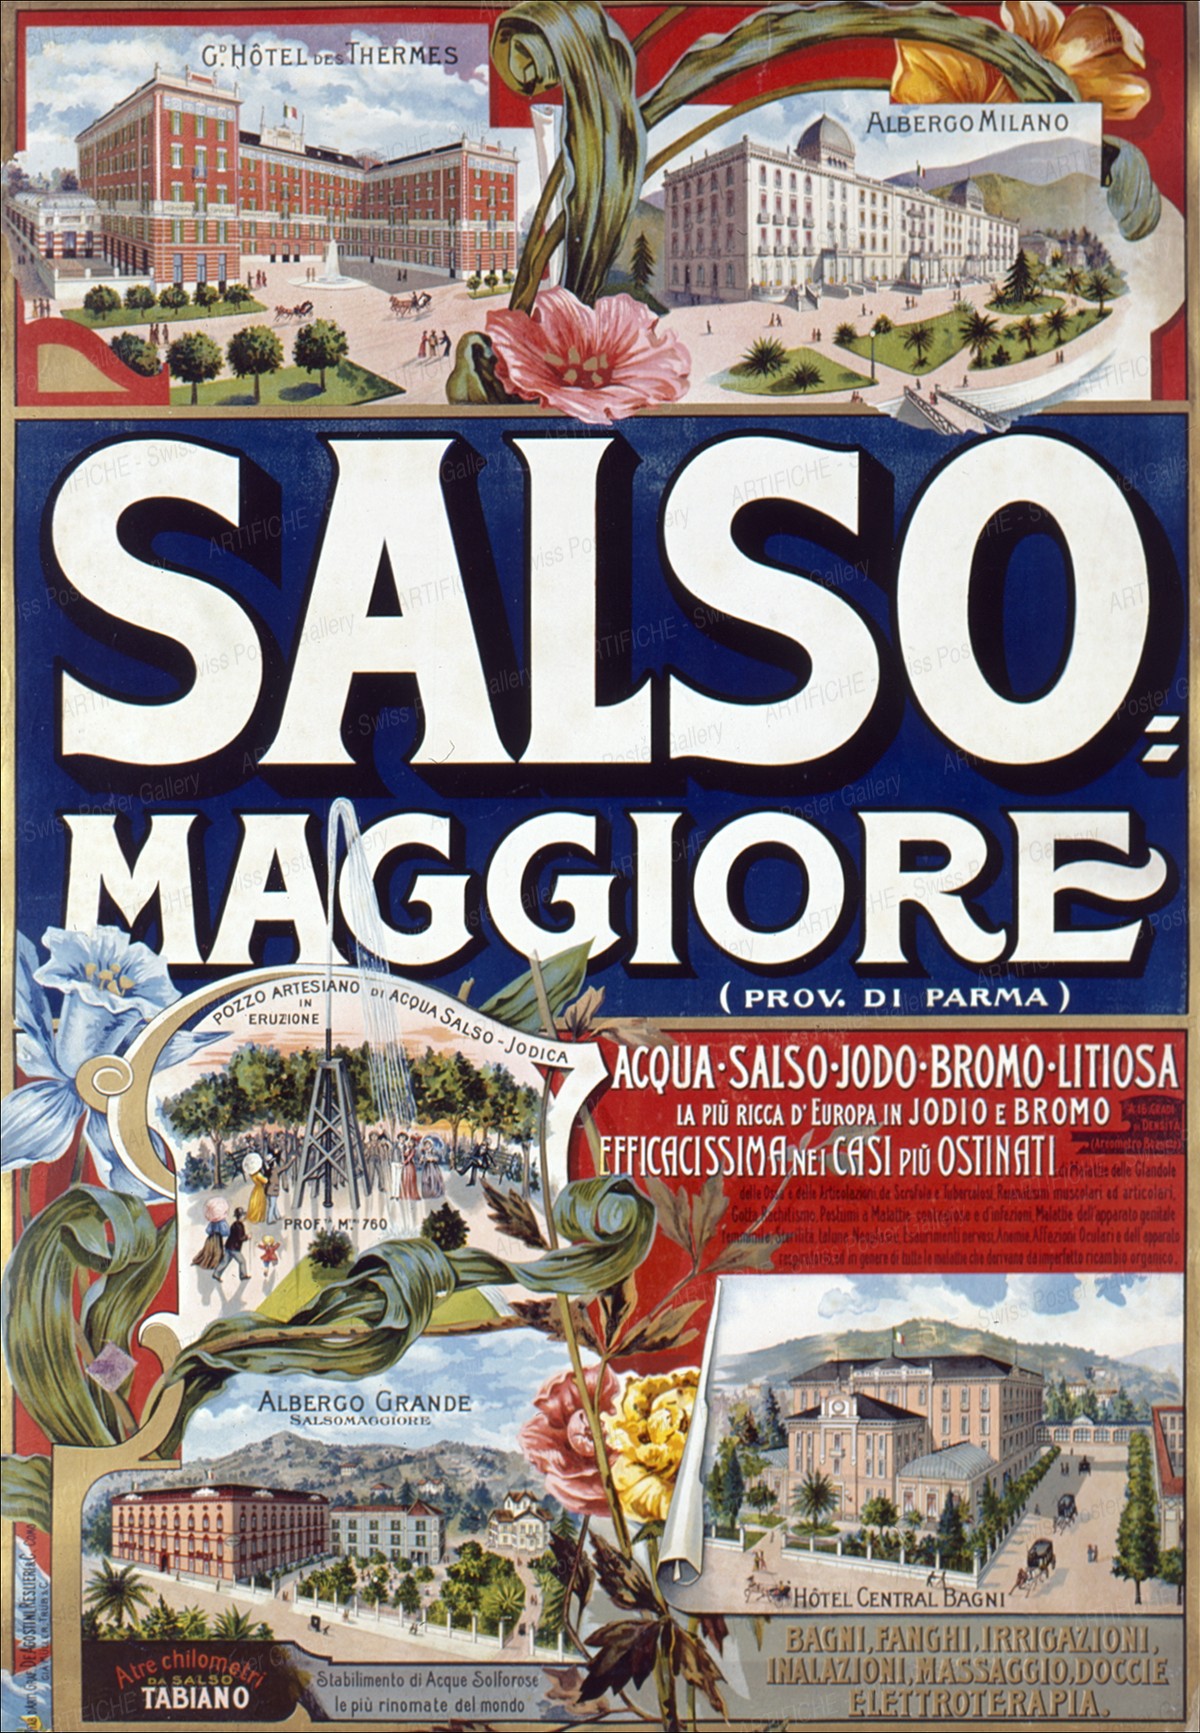 Salso Maggiore, Artist unknown